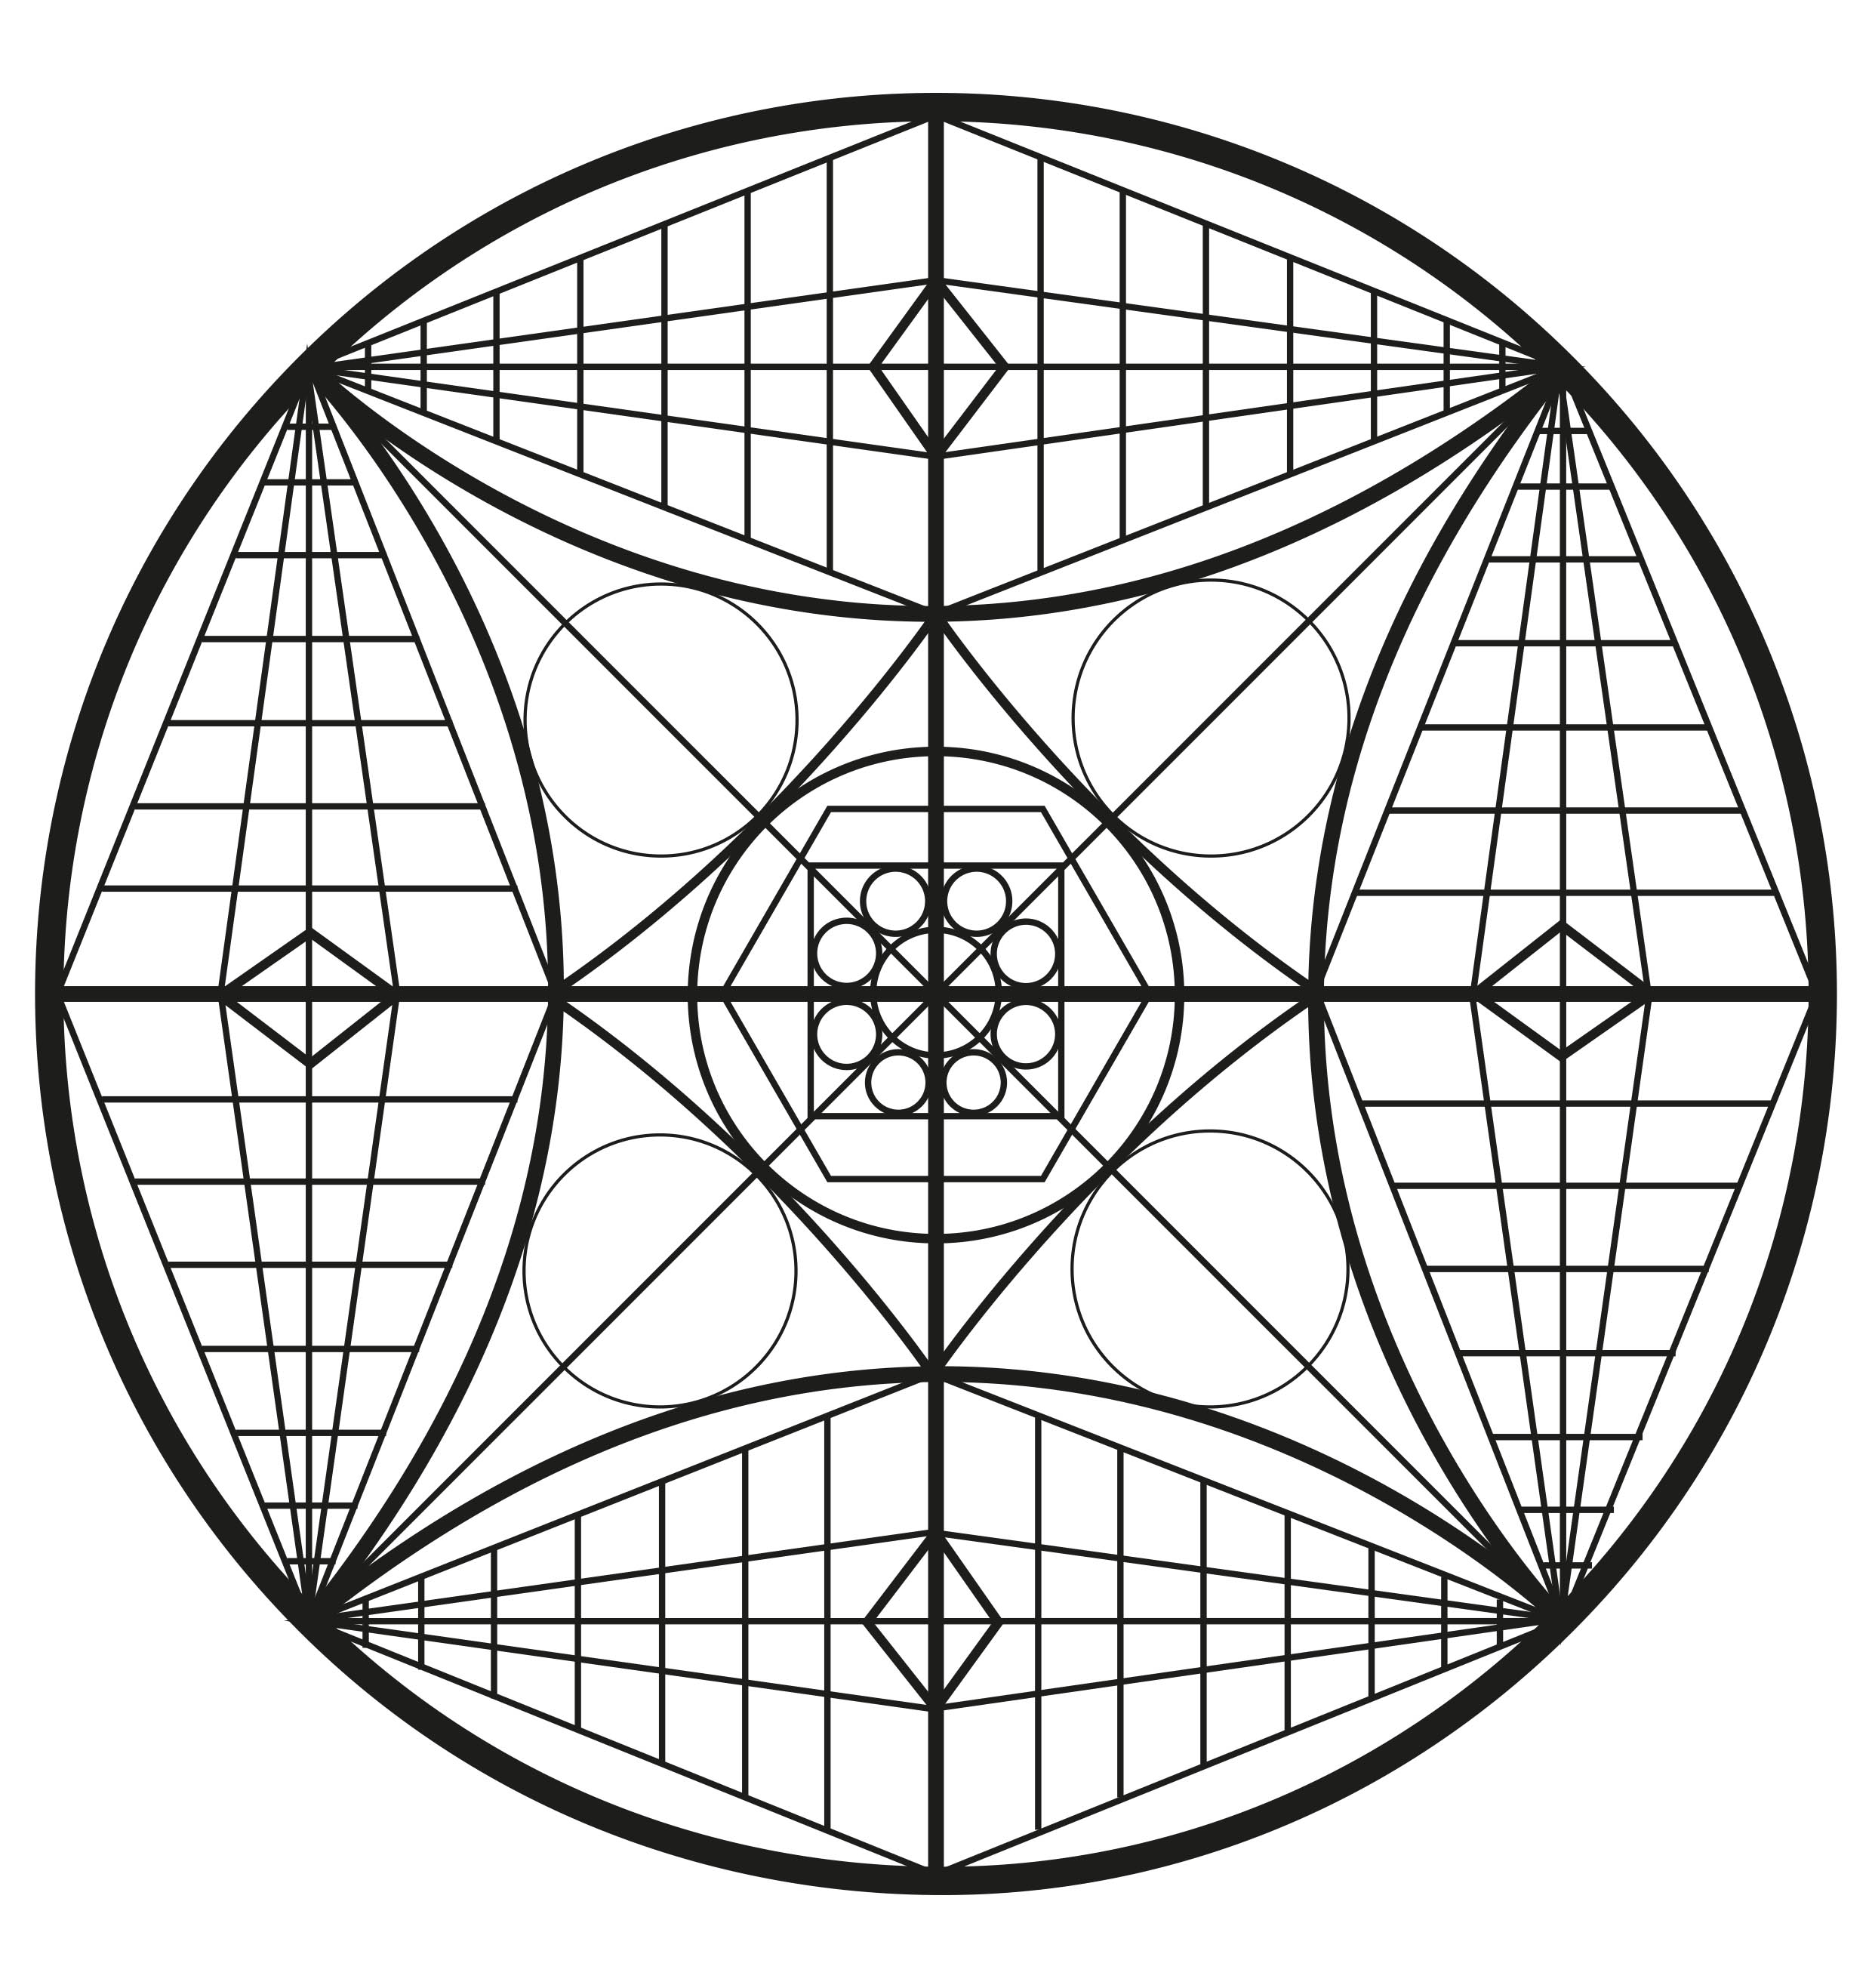 Farbe dieses abstrakte Mandala mit all seinen Details